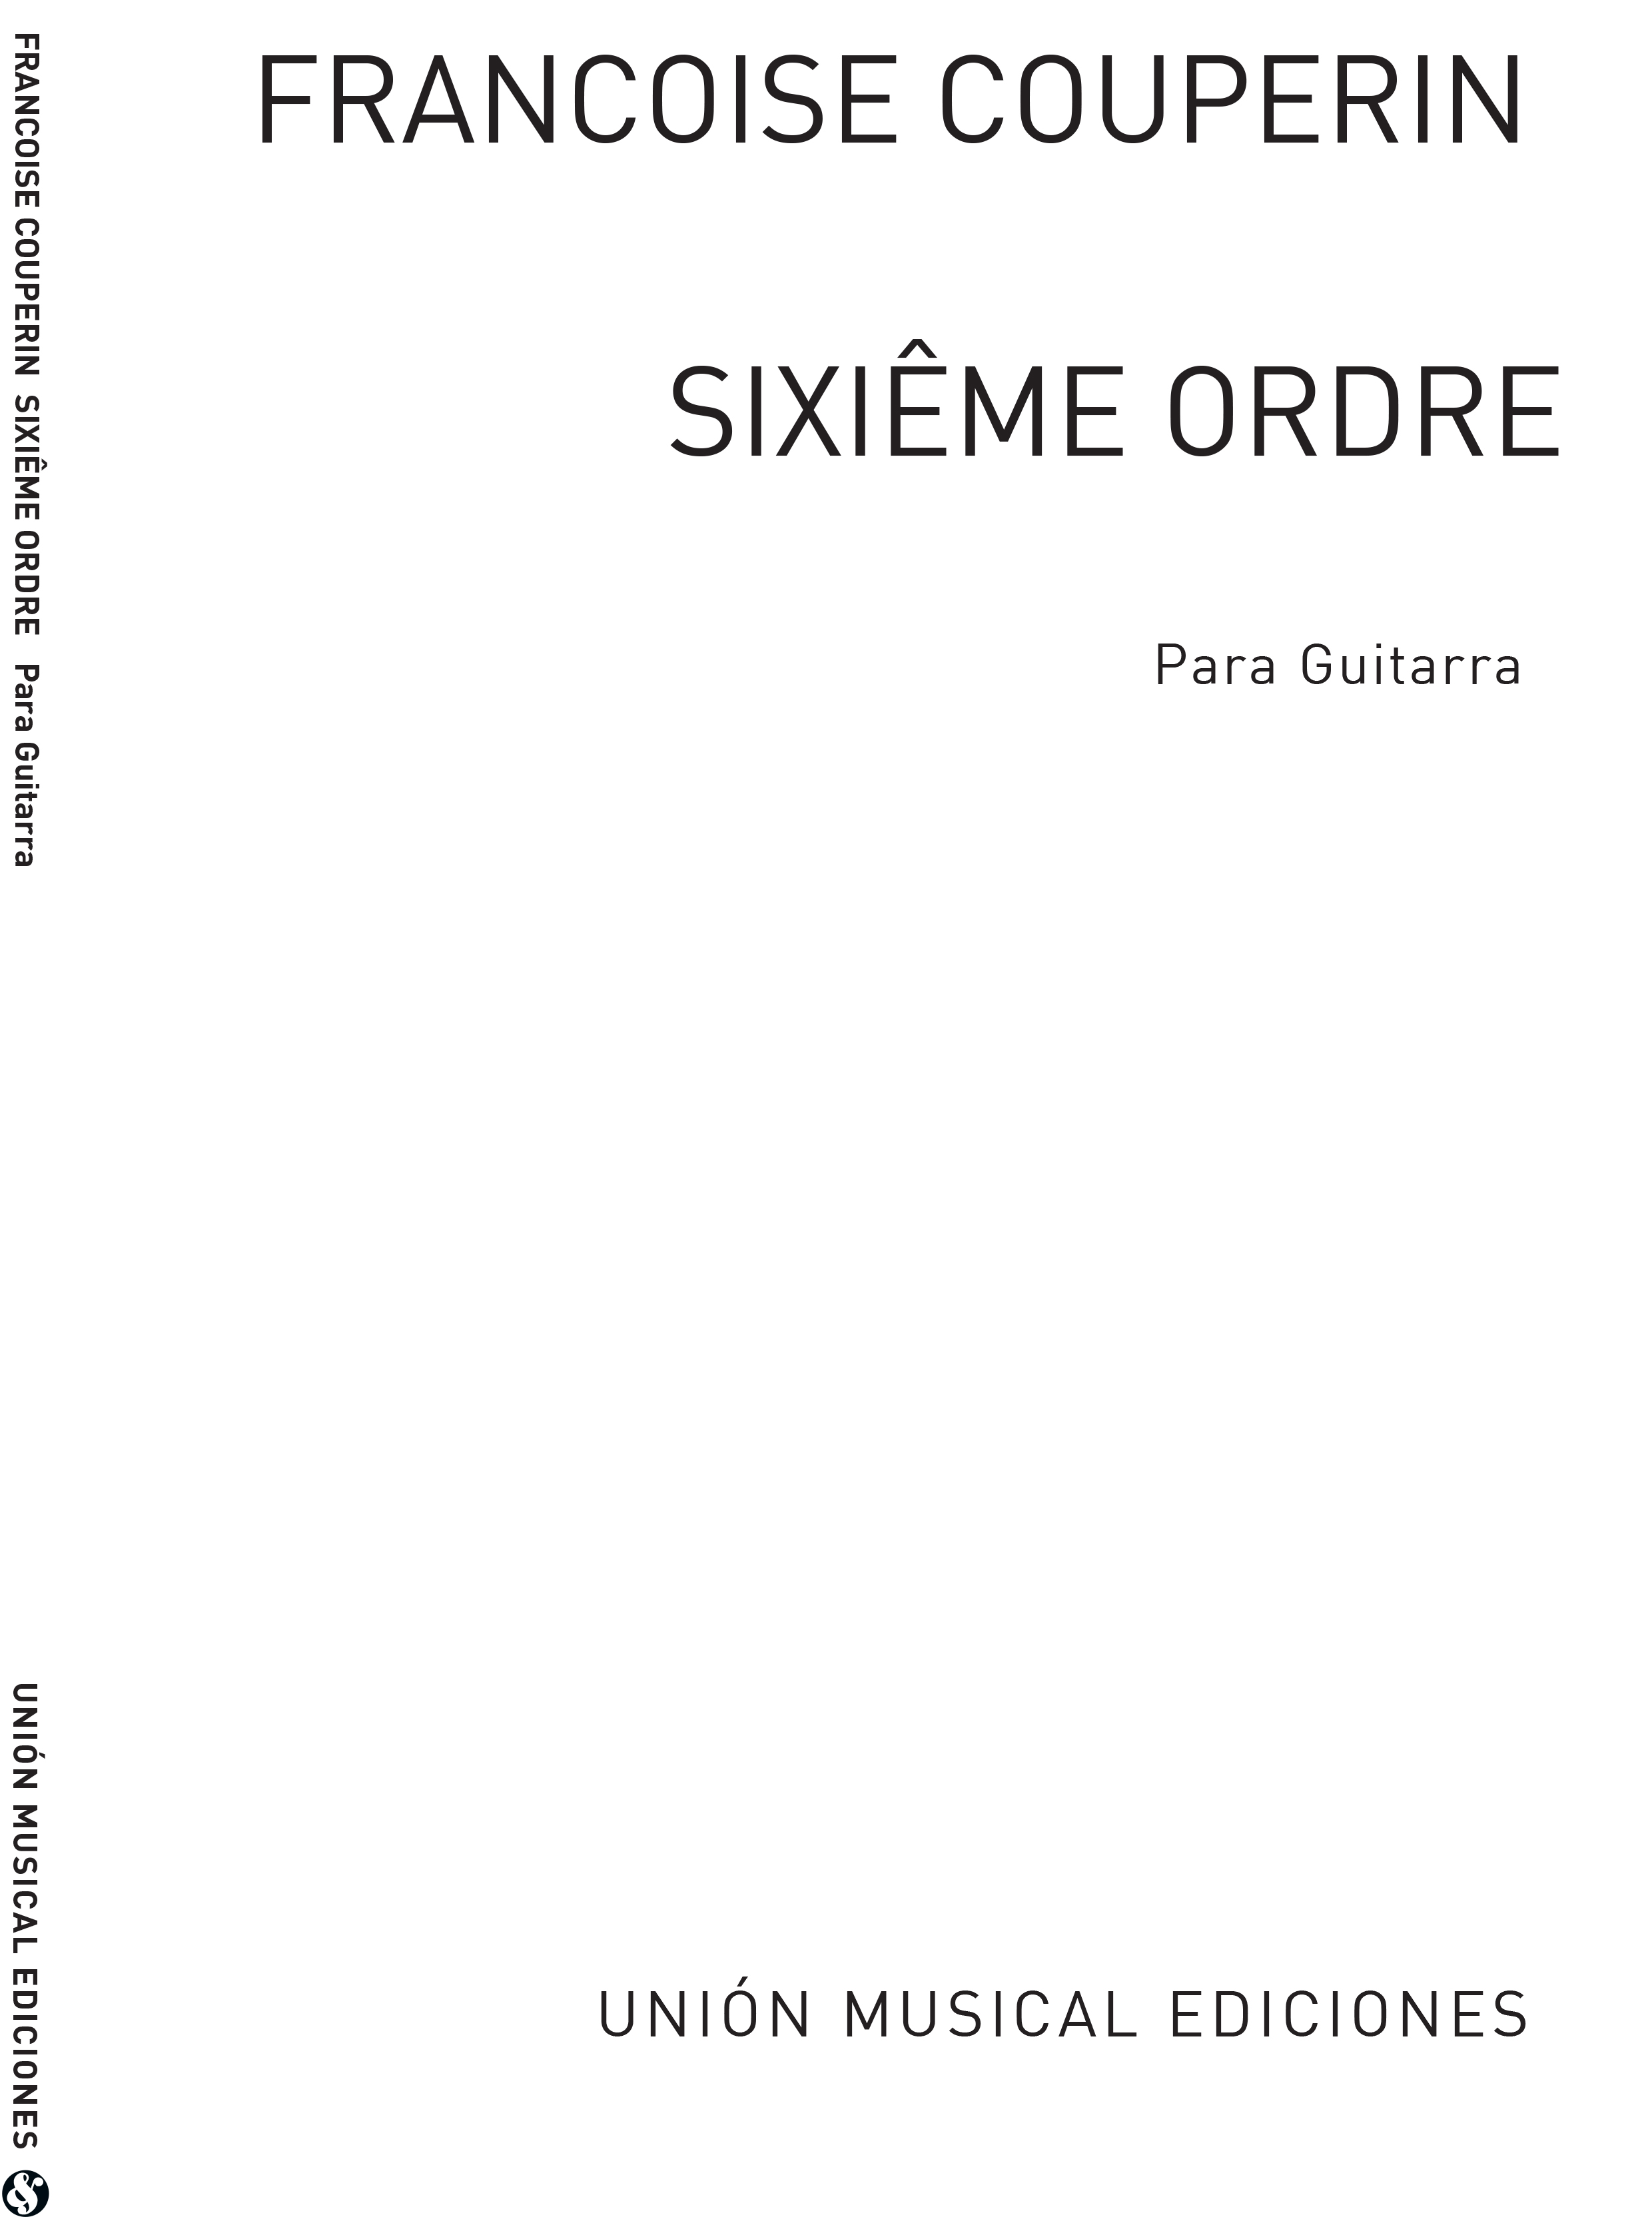 Franois Couperin: Sixieme Ordre Suite: Guitar: Instrumental Album